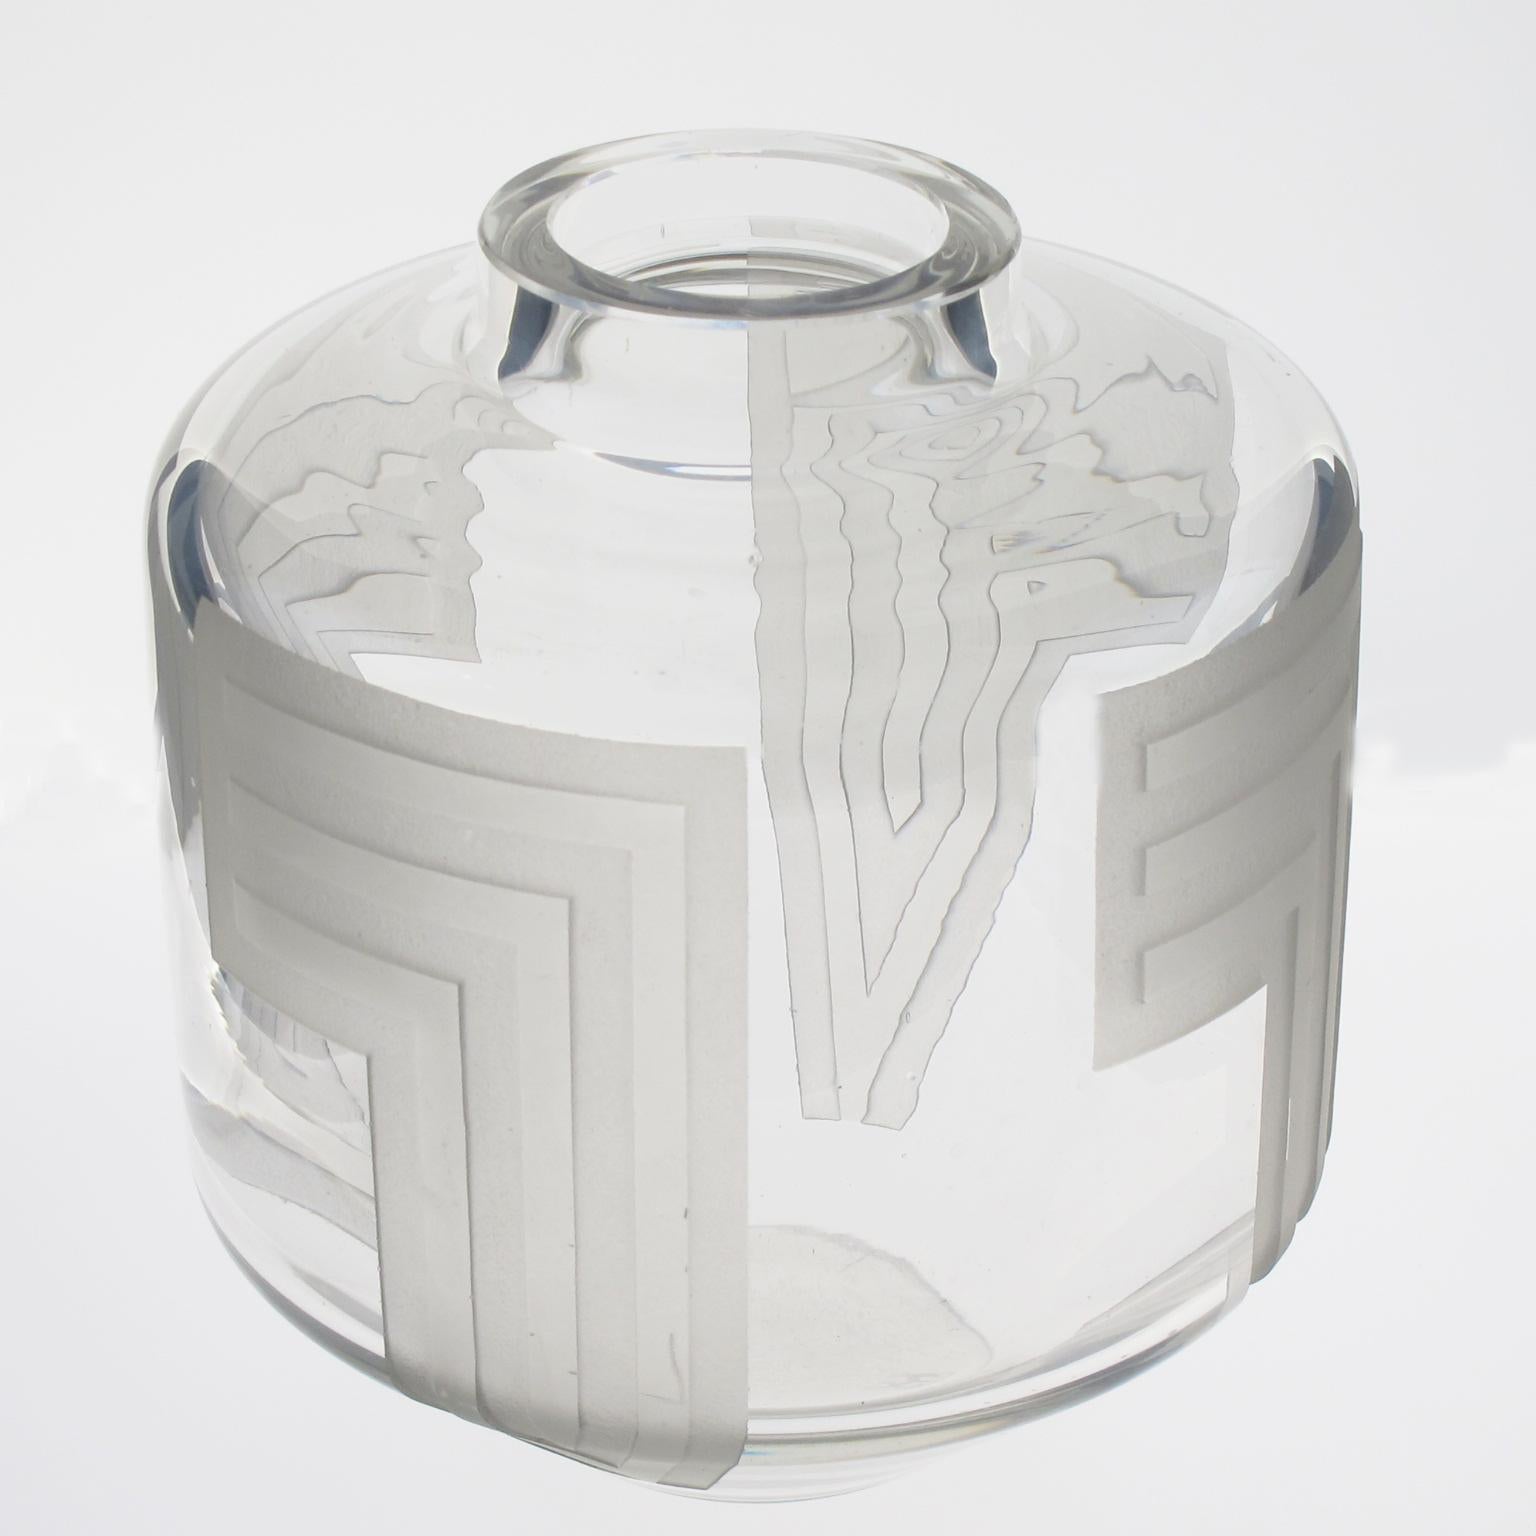 Der französische Designer Jean Luce (1895-1964) schuf diese beeindruckende Vase aus säuregeätztem Glas aus den 1930er Jahren. Das geometrische Muster mit wiederholten Verzierungen ist rund um die Vase angeordnet. Die Signatur des Künstlers befindet